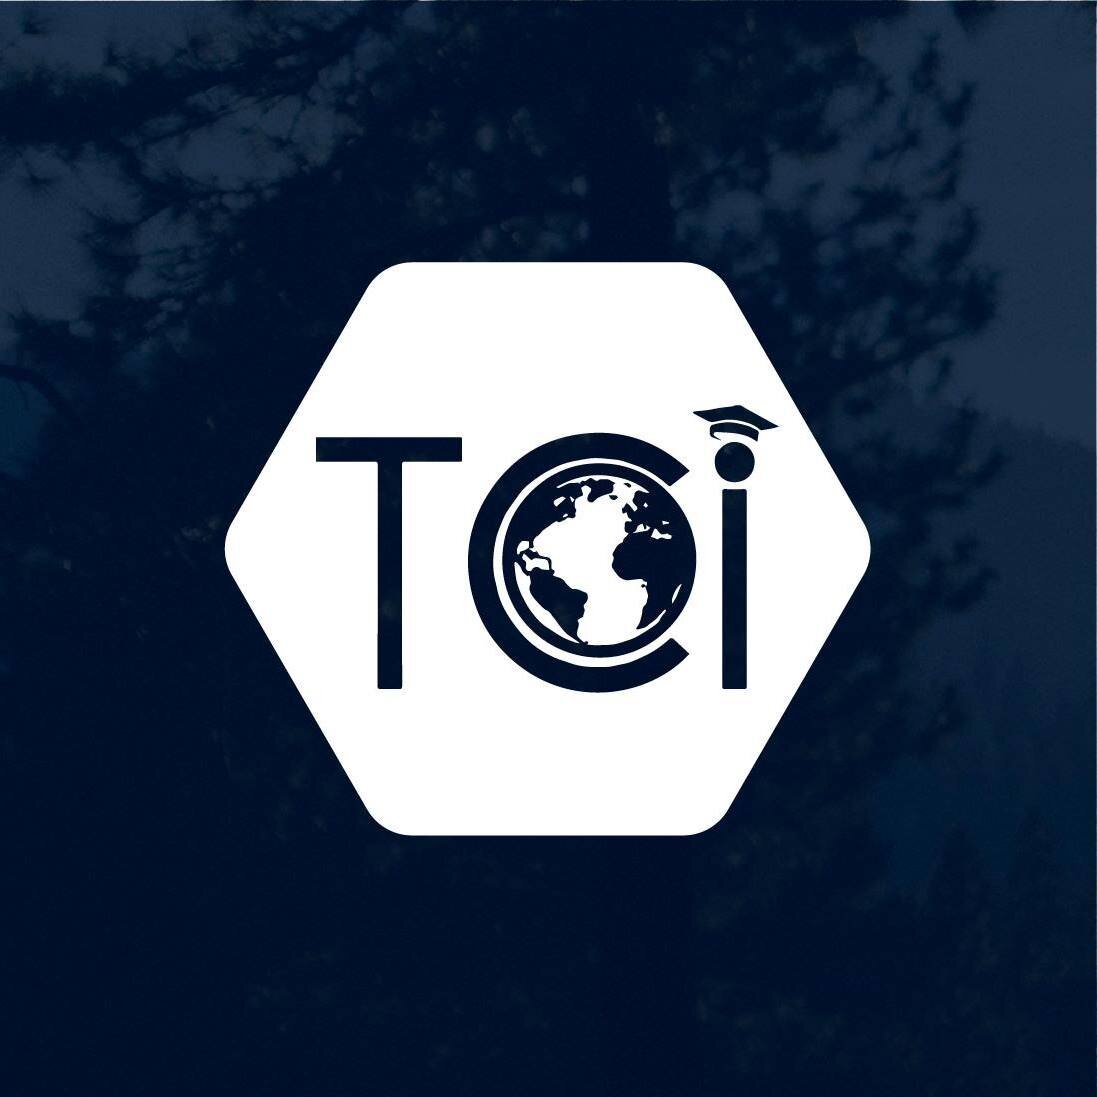 TCI logo.jpg